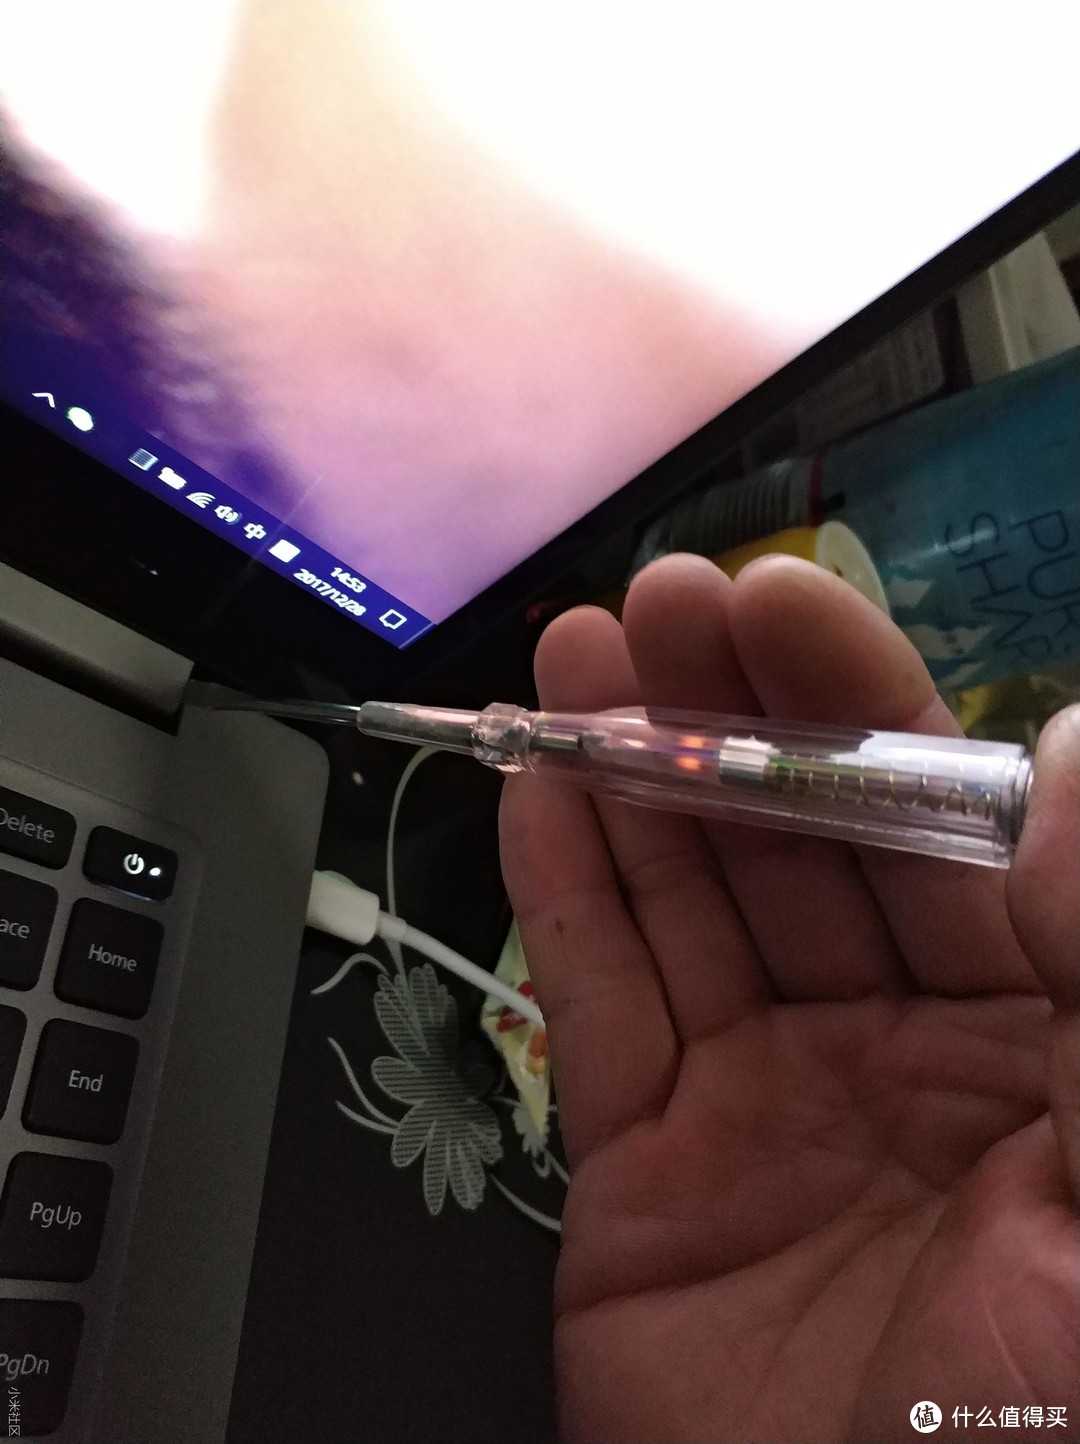 迟到的小米笔记本Pro 15.6″ 使用体验